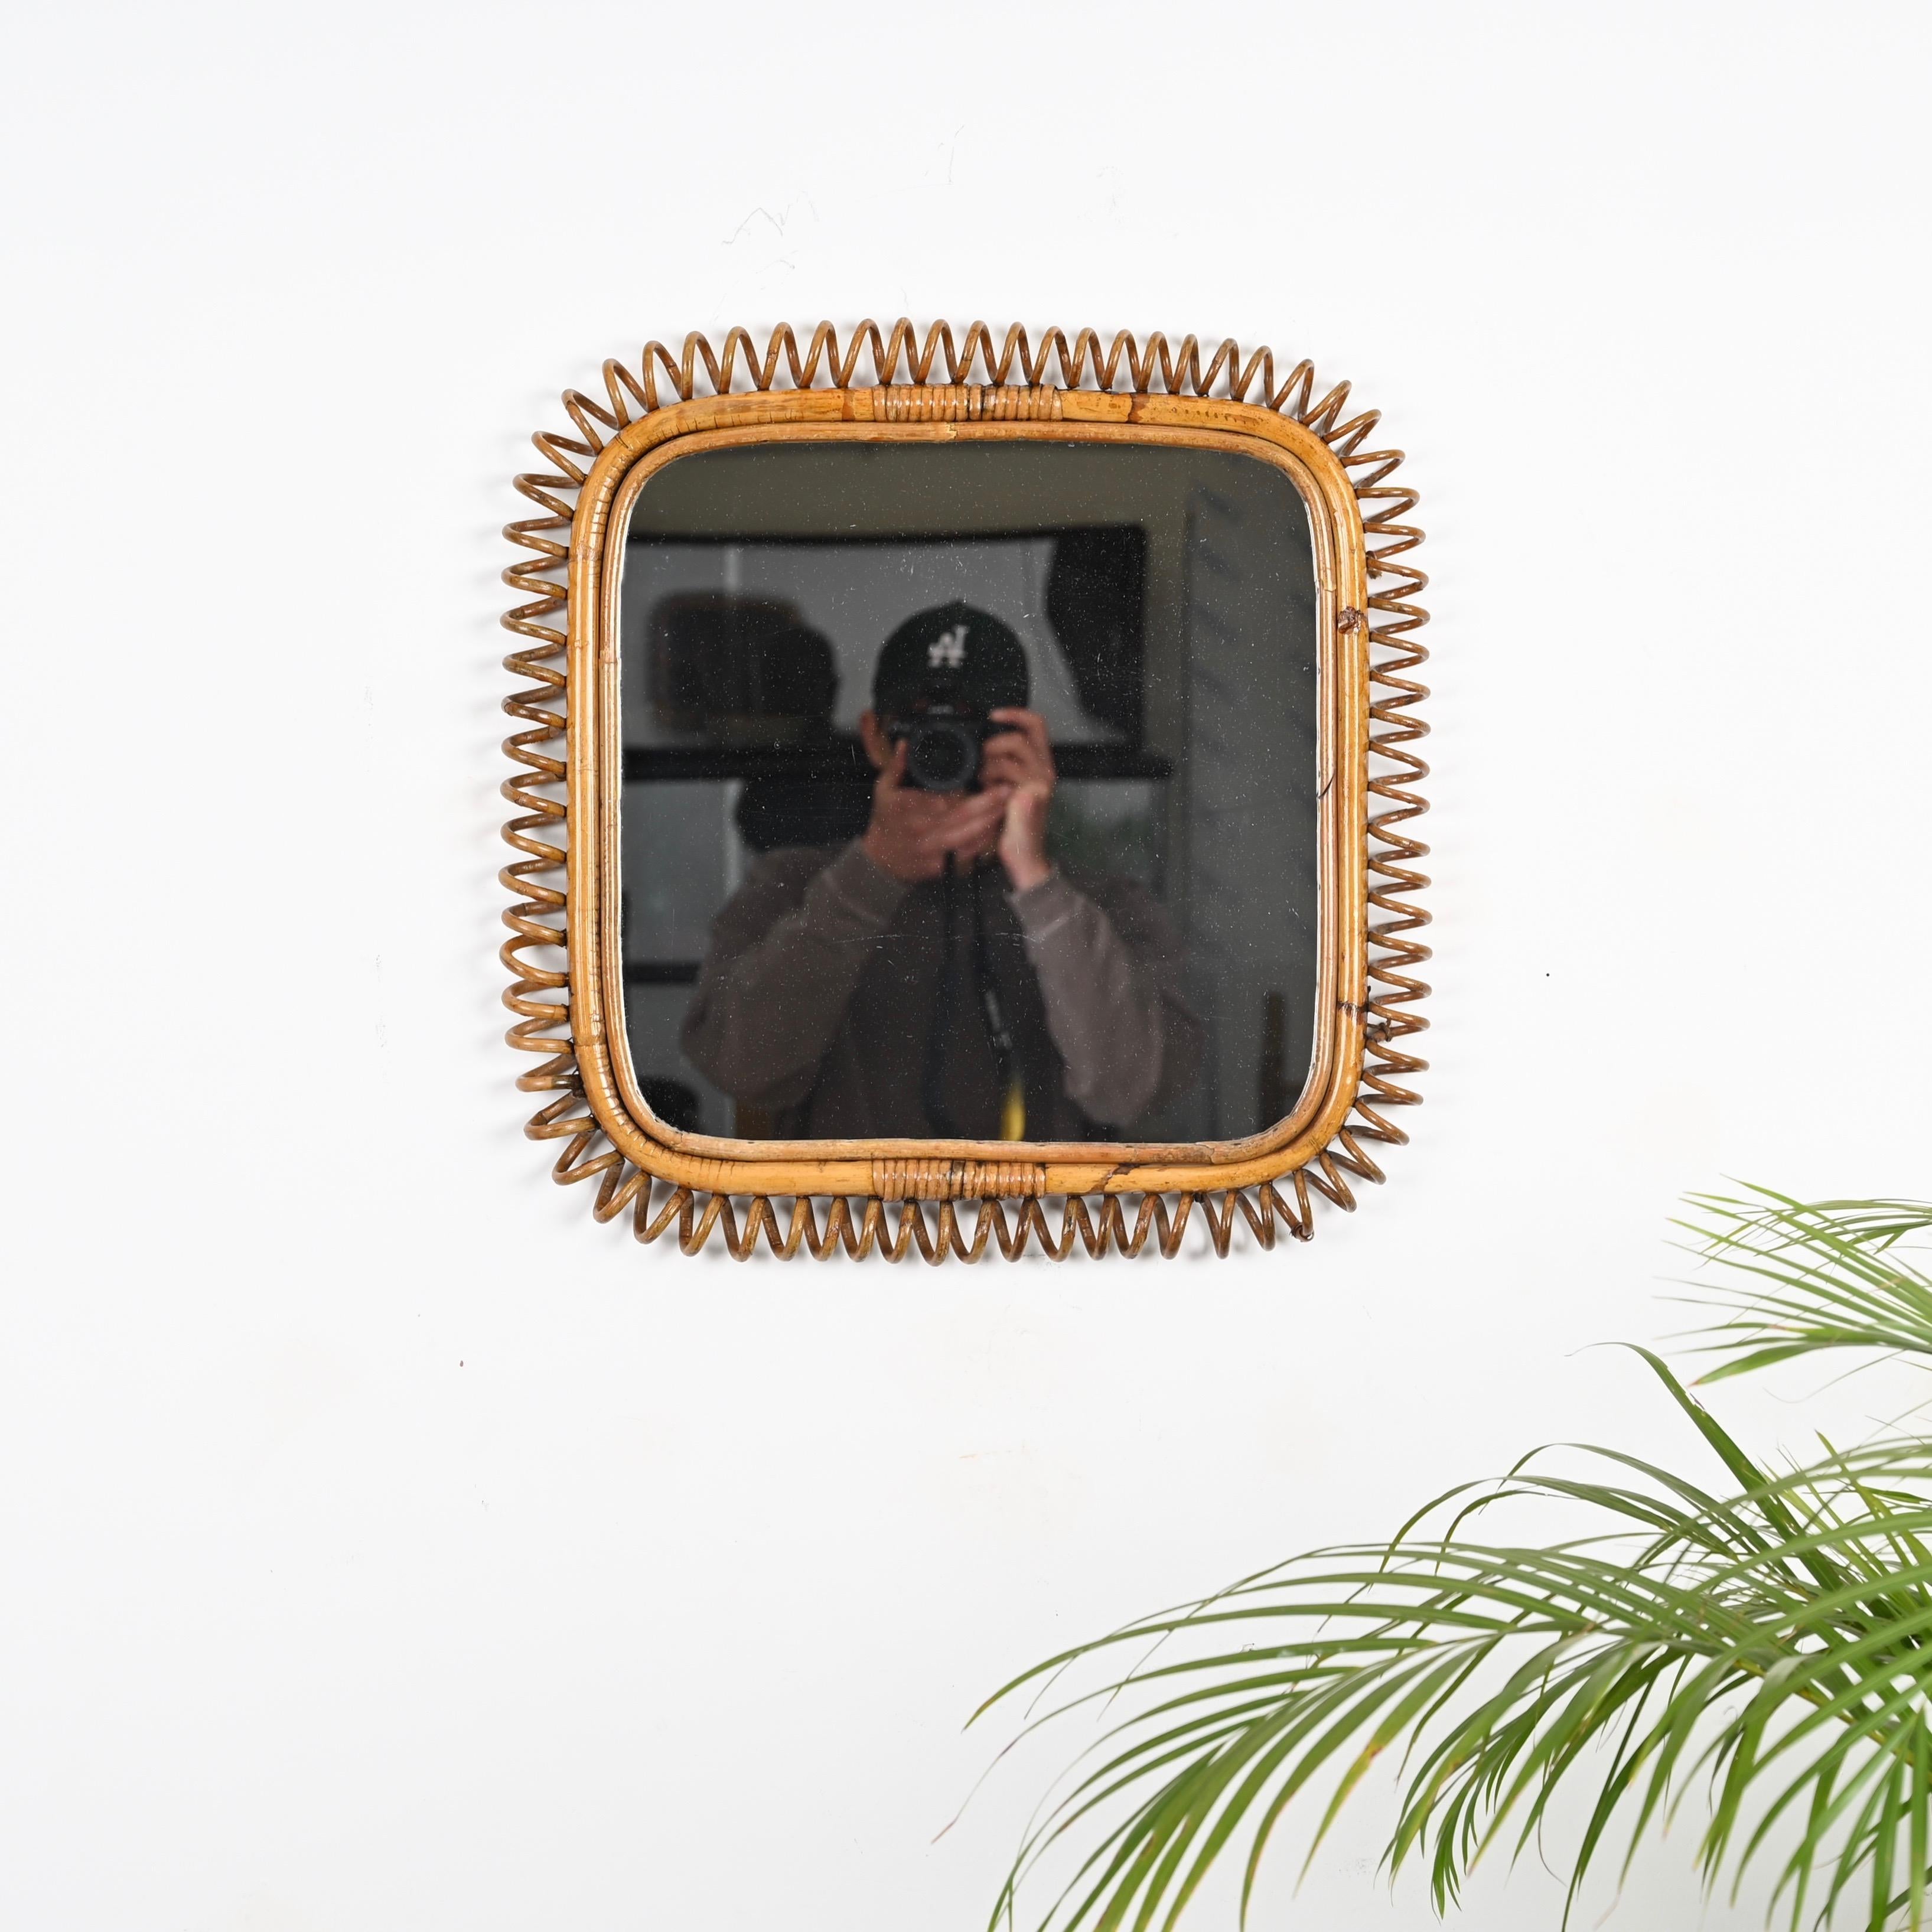 Spektakuläre Mid-Century Cote d'Azur quadratischen Spiegel vollständig in Bambus, gebogene Rattan gemacht  und Korbwaren. Dieser einzigartige Spiegel wurde in den 1960er Jahren in Italien hergestellt.

Dieser erstaunliche Spiegel ist vollständig